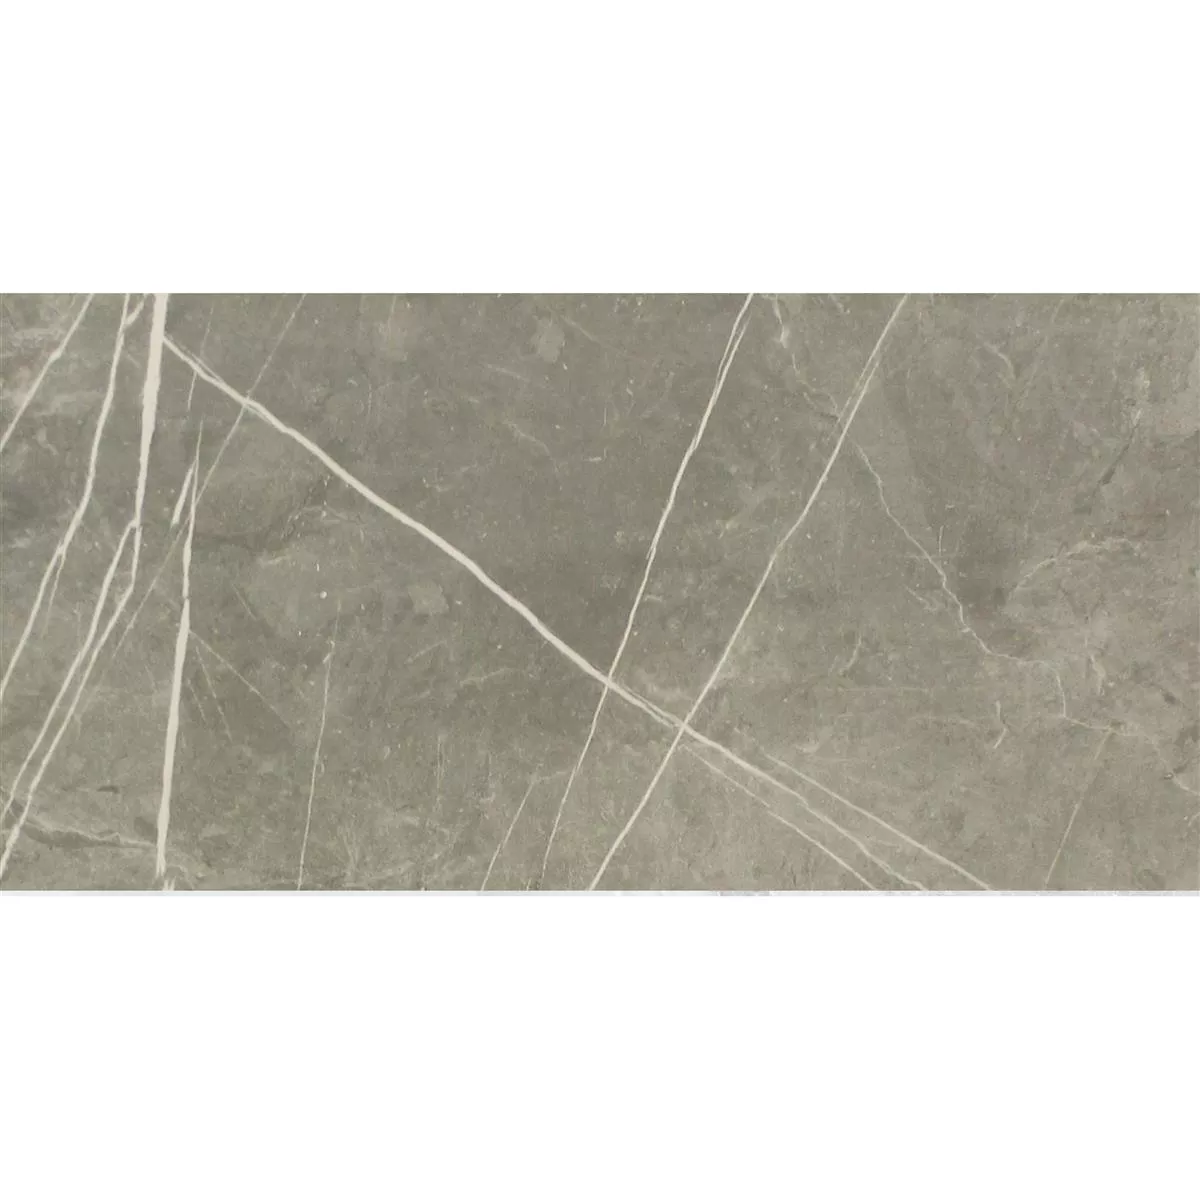 Πλακάκια Δαπέδου Astara Eμφάνιση Φυσικής Πέτρας Αμεμπτος Grey 30x60cm